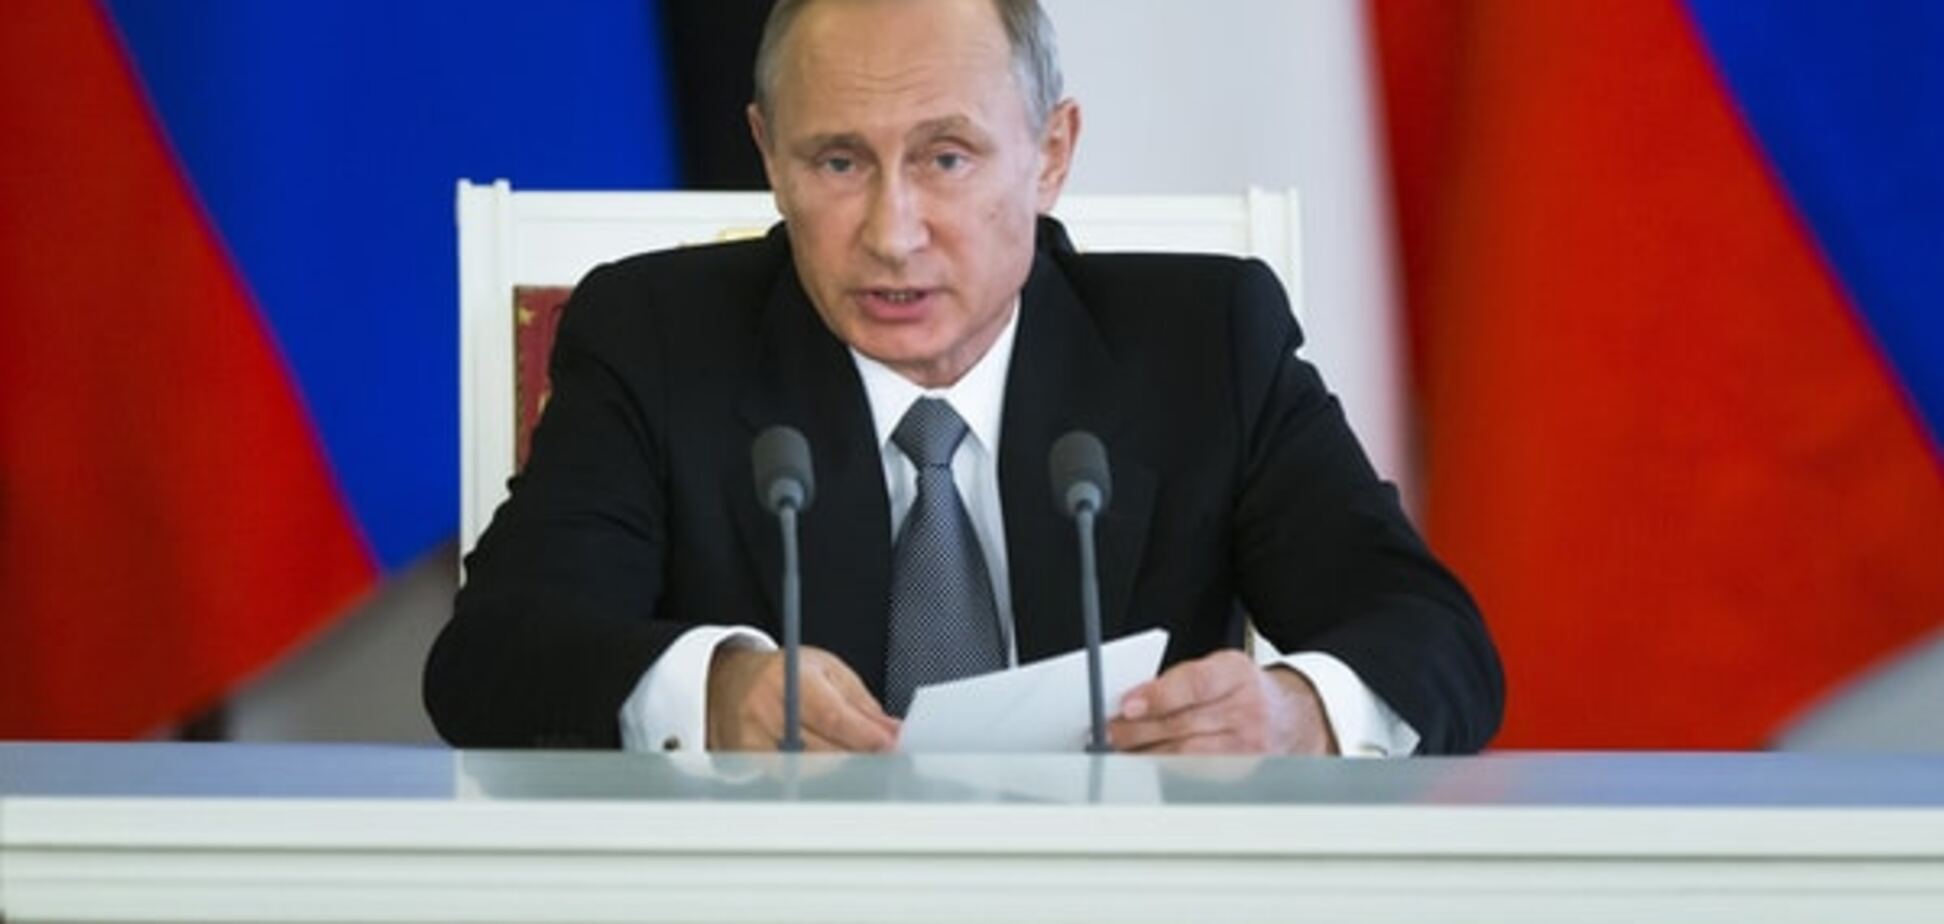 Путин может предложить политику 'ни войны, ни мира' в Украине - Киселев